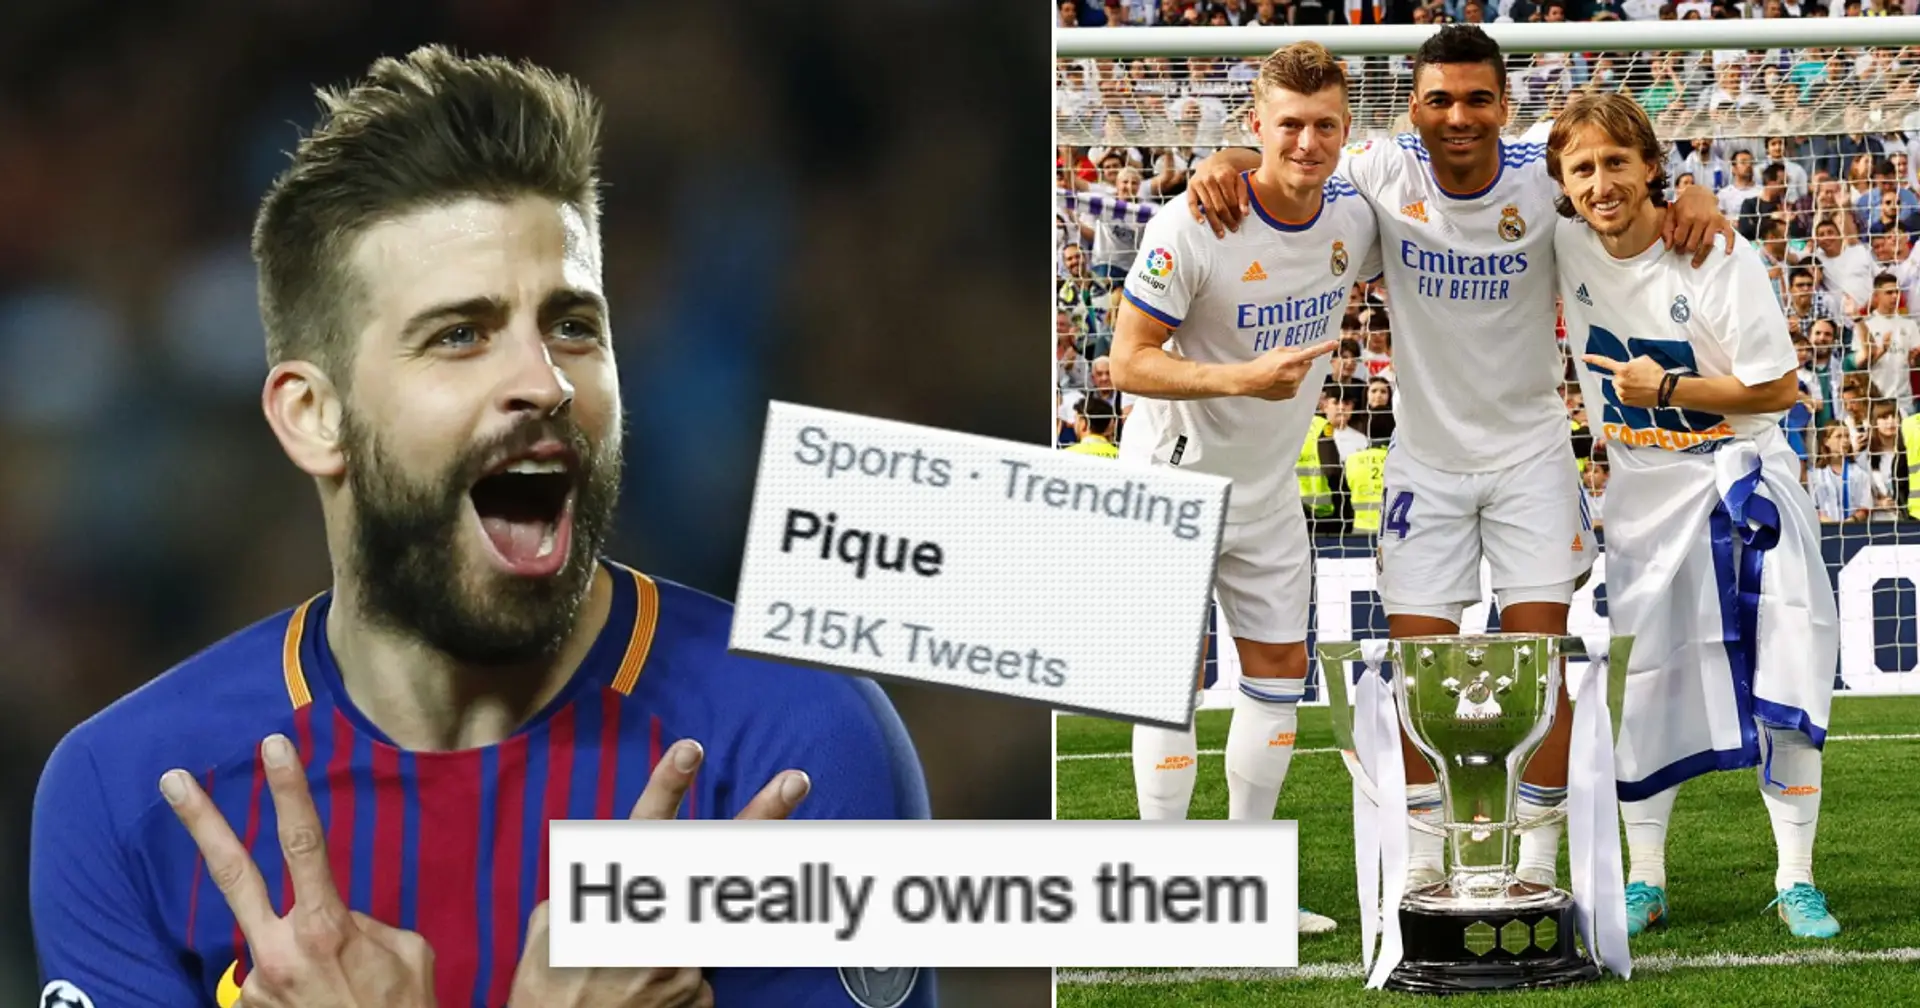 Pourquoi Piqué est-il à la mode sur Twitter et comment est-il lié à la victoire de Madrid en Liga? Explication